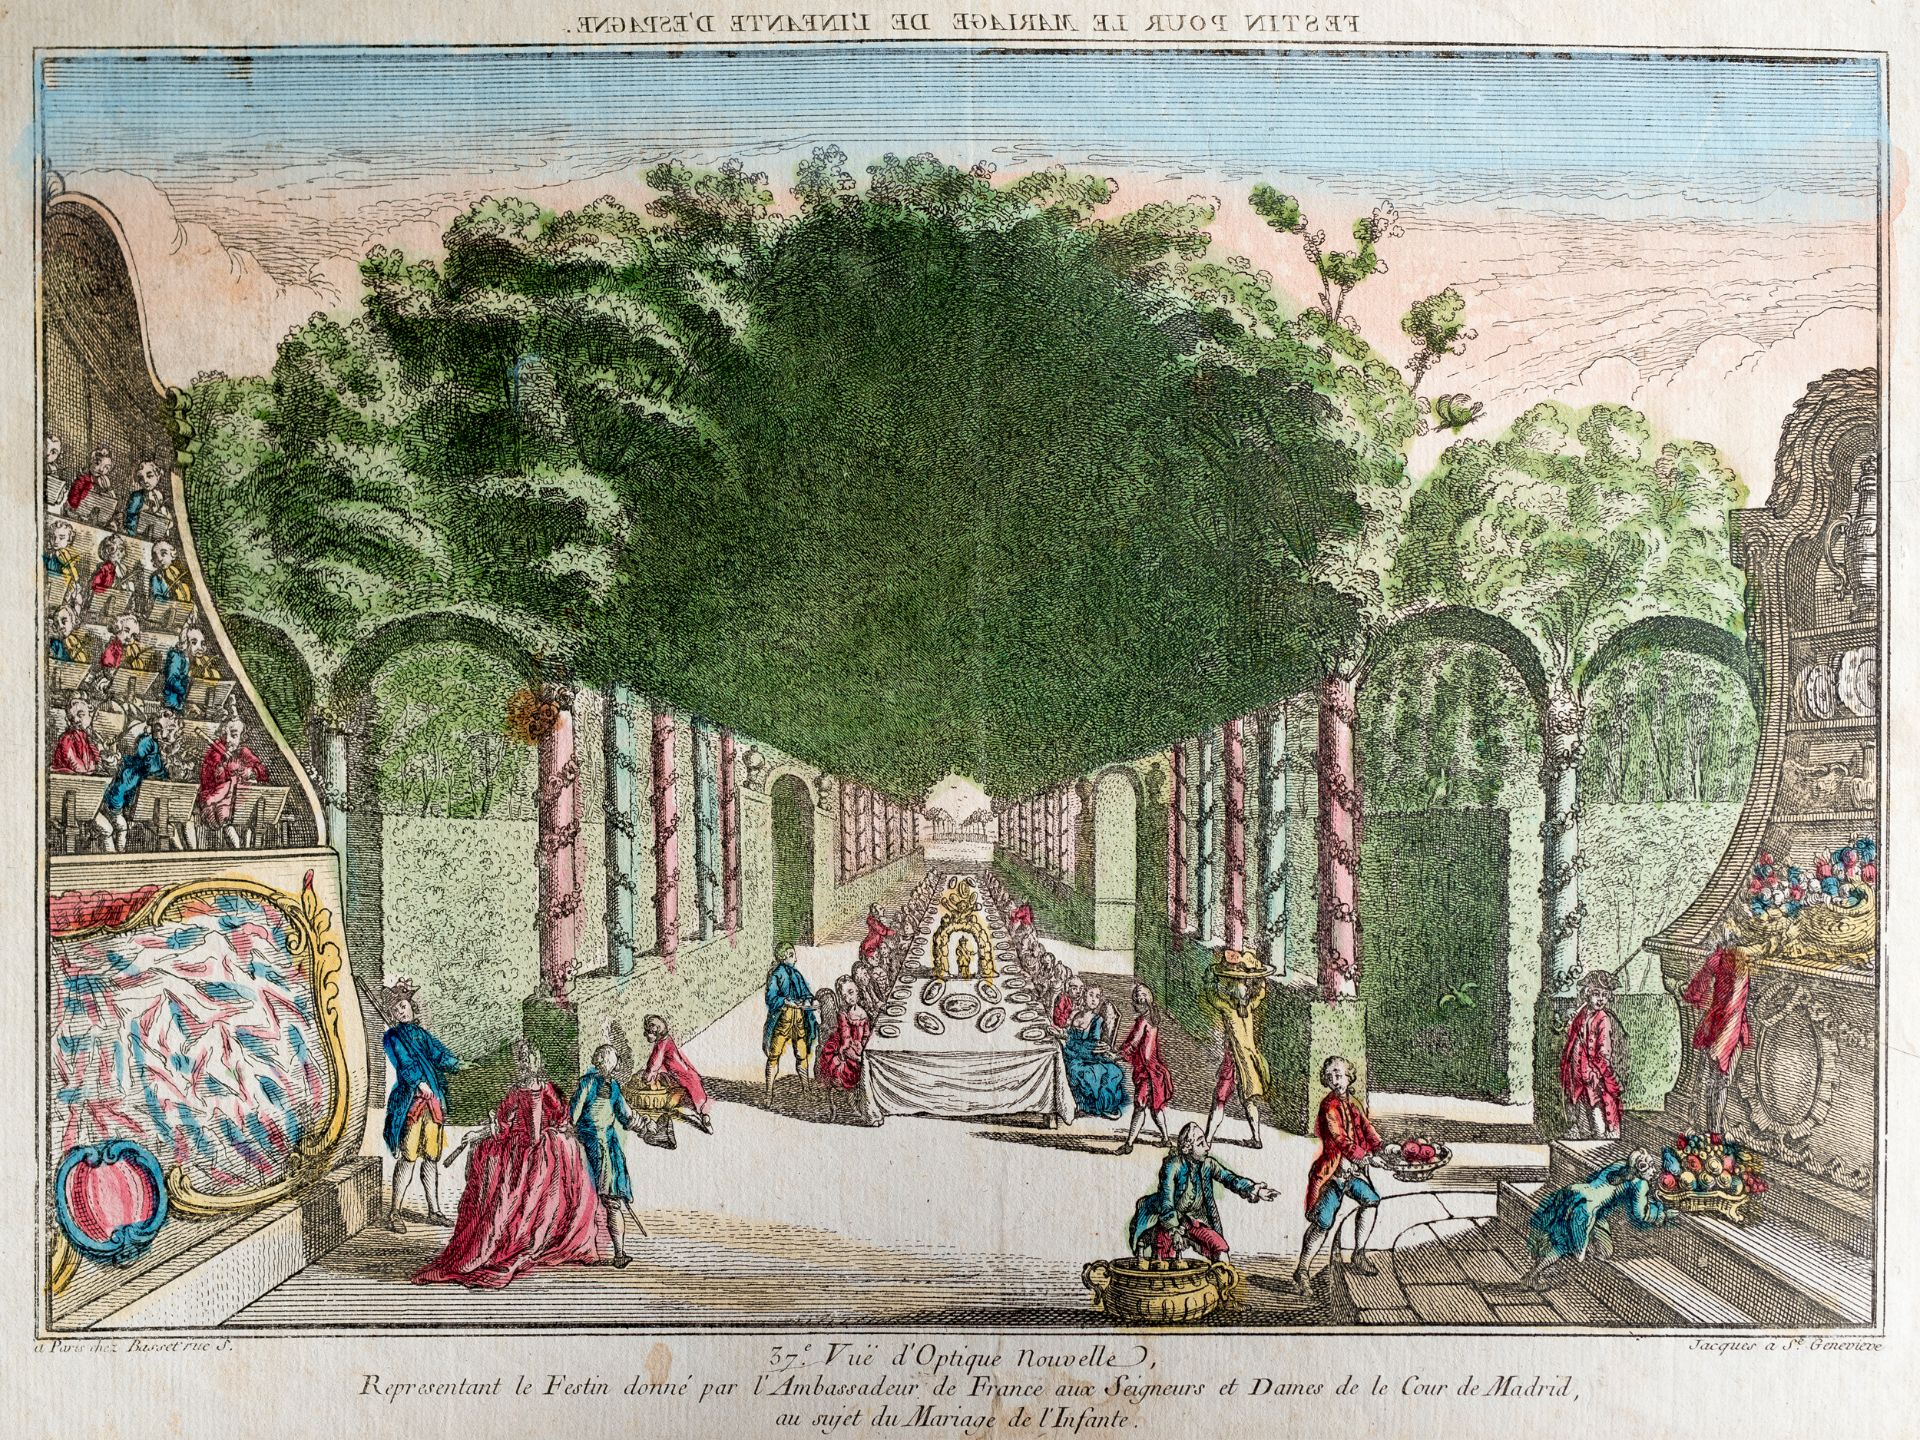 "Festin pour le mariage de l'infante d'espagne", France, 18th century?